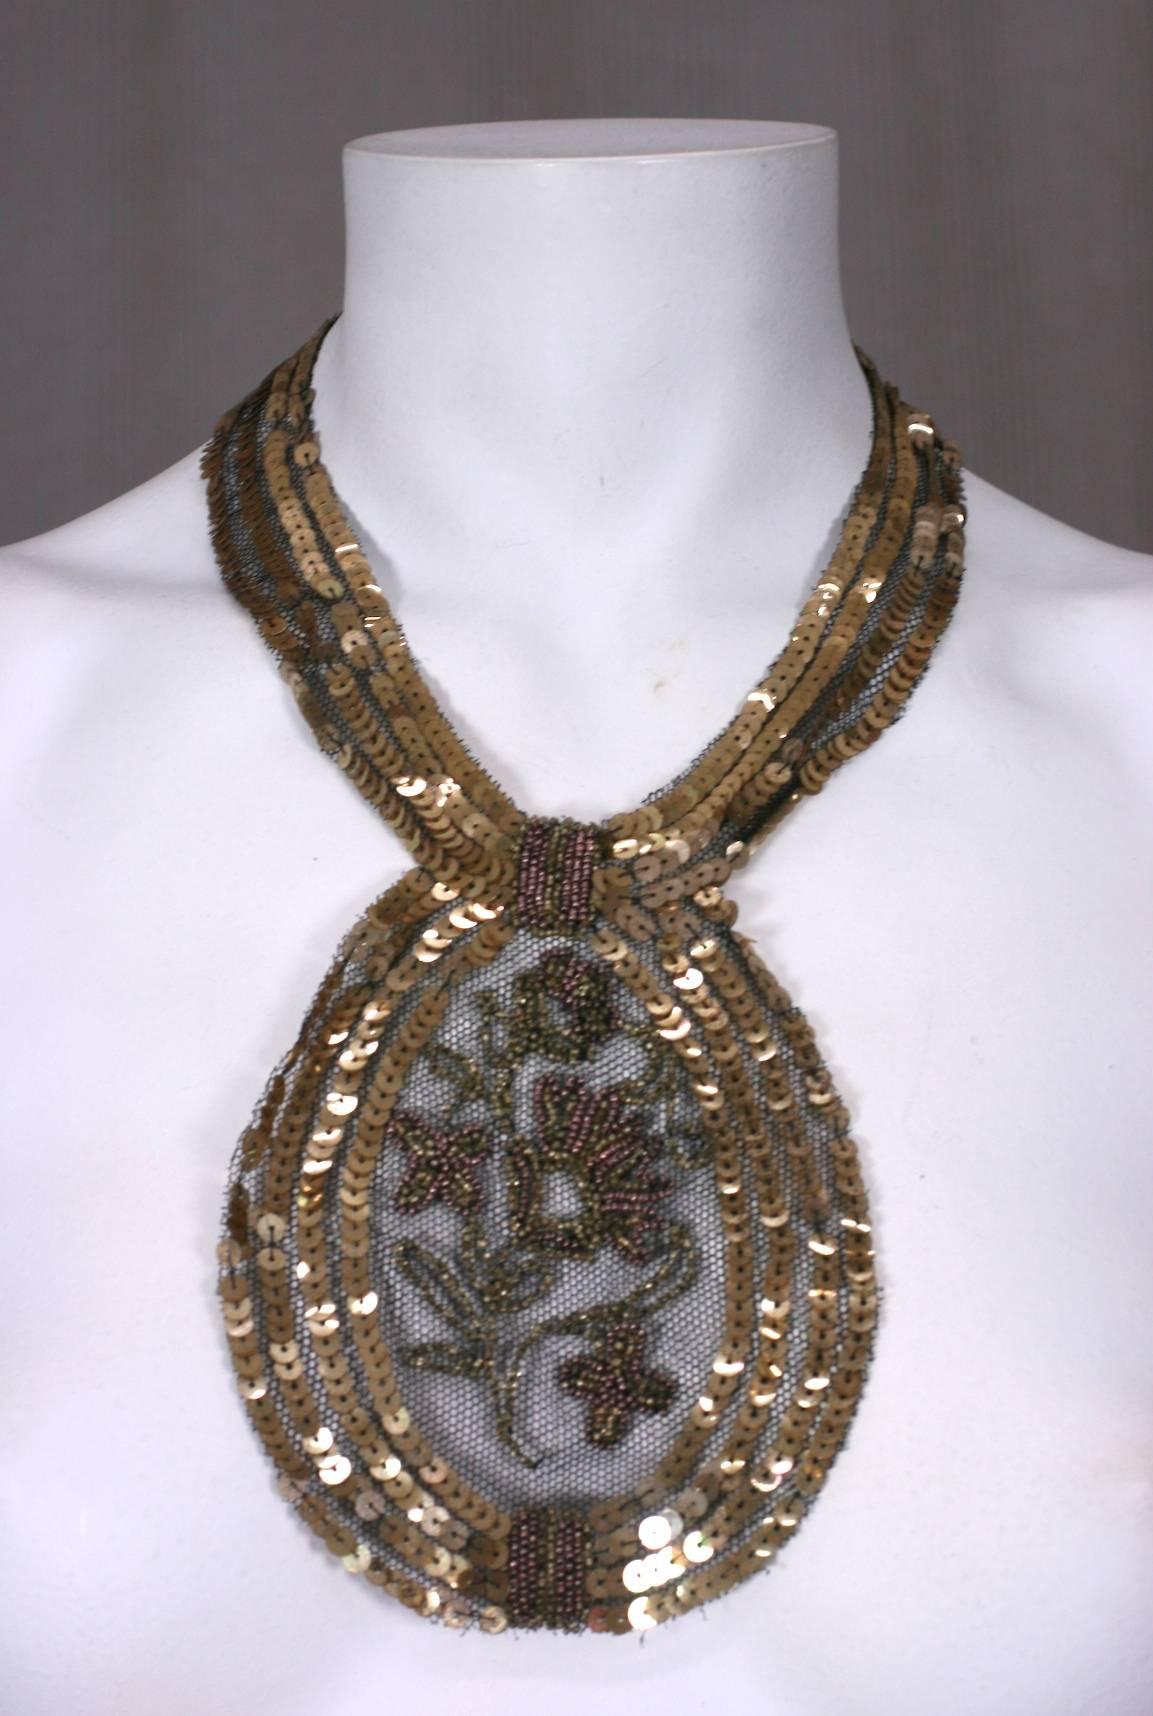 pièce de cou en paillettes et perles des années 1920, probablement née comme ornement de robe mais convertie en collier avec l'ajout d'un fermoir. Des paillettes et des perles dorées brodées à la main sont cousues sur une base de tulle noir. Délicat